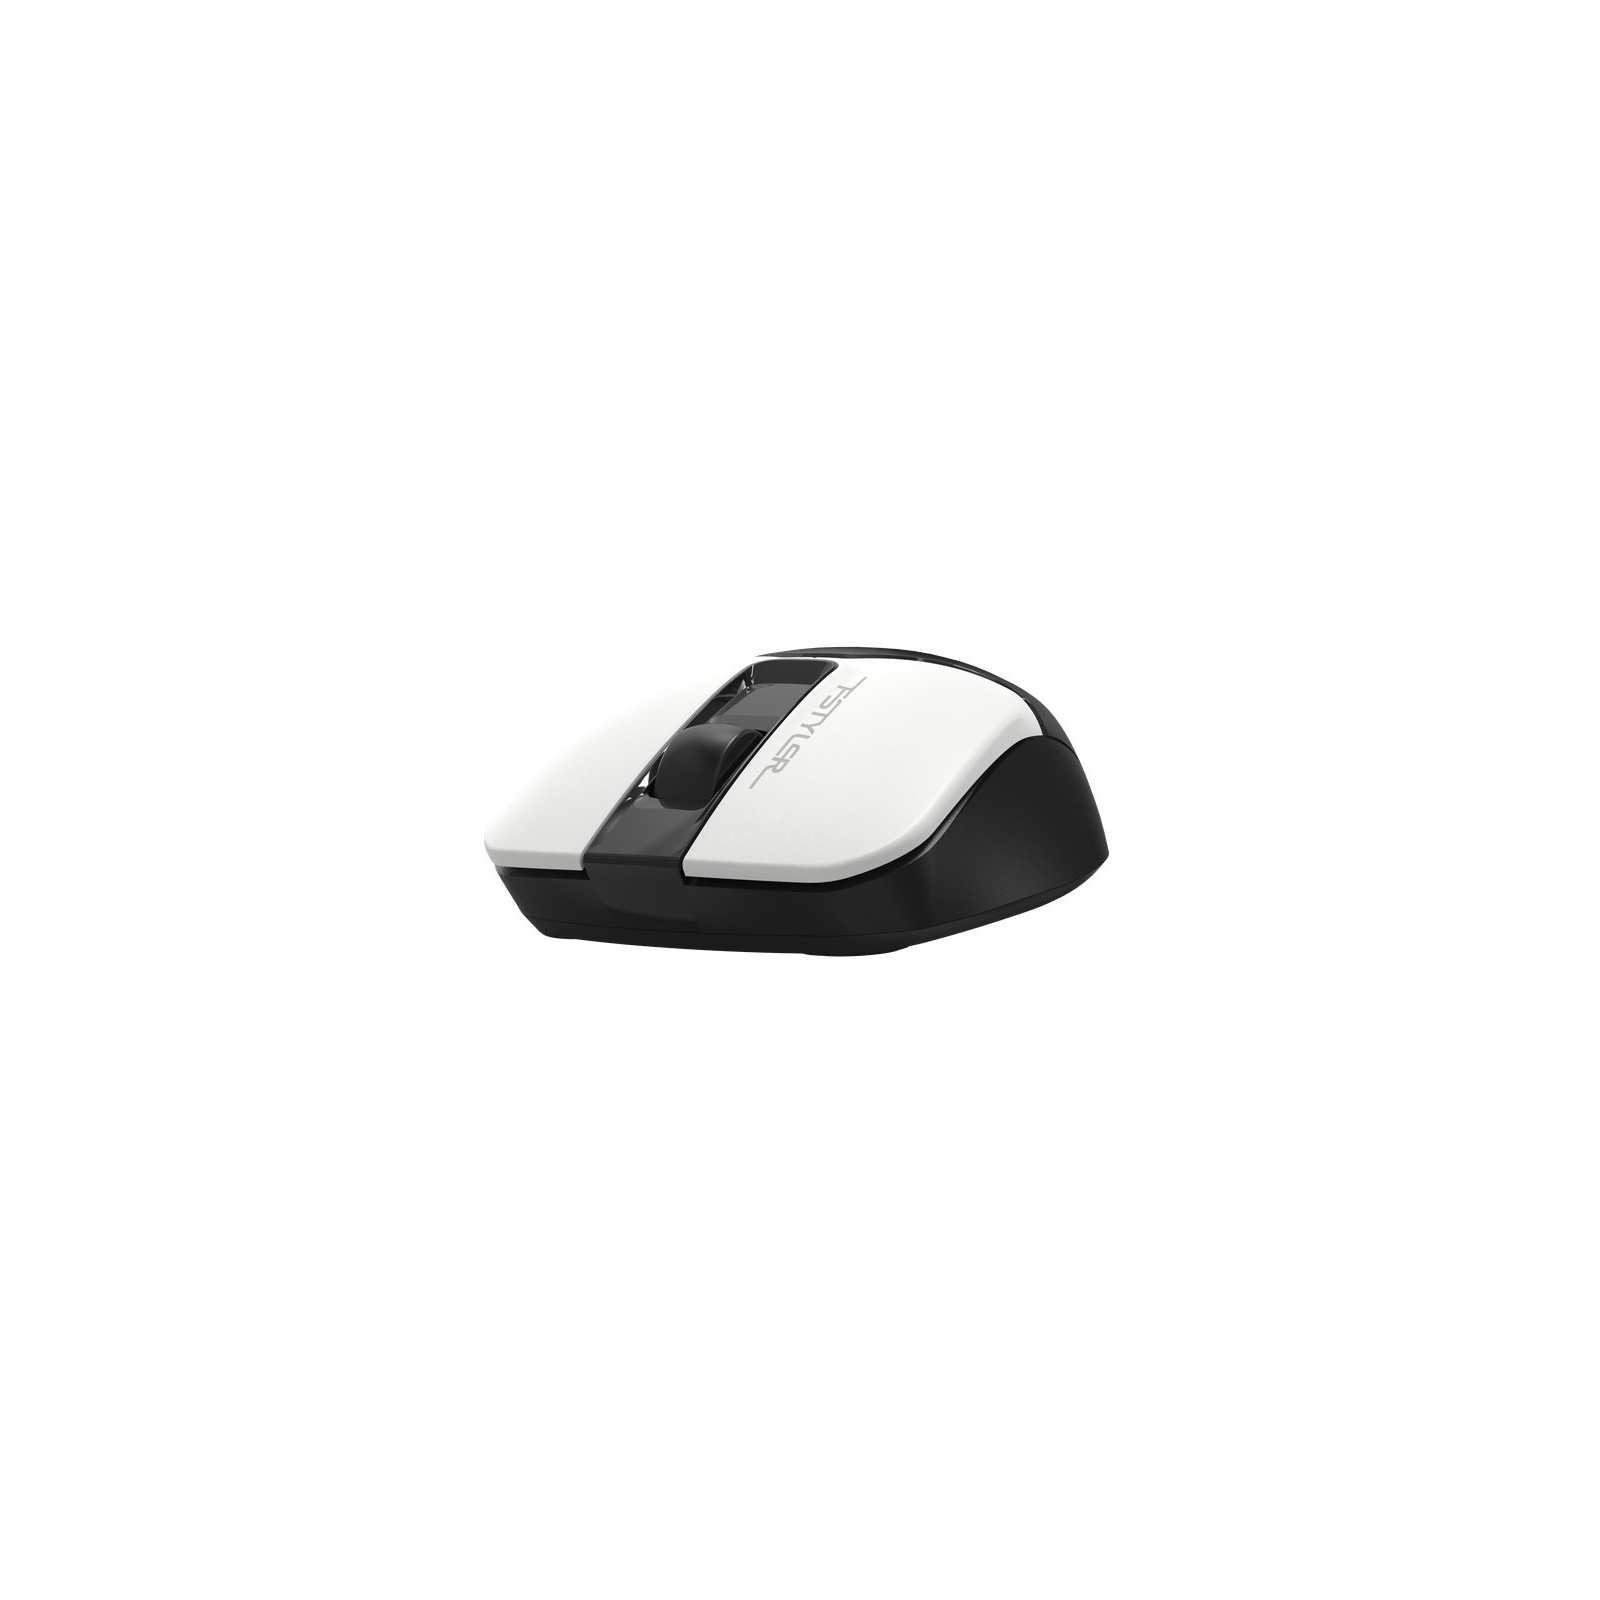 Мышка A4Tech FB12S Wireless/Bluetooth White (FB12S White) изображение 6